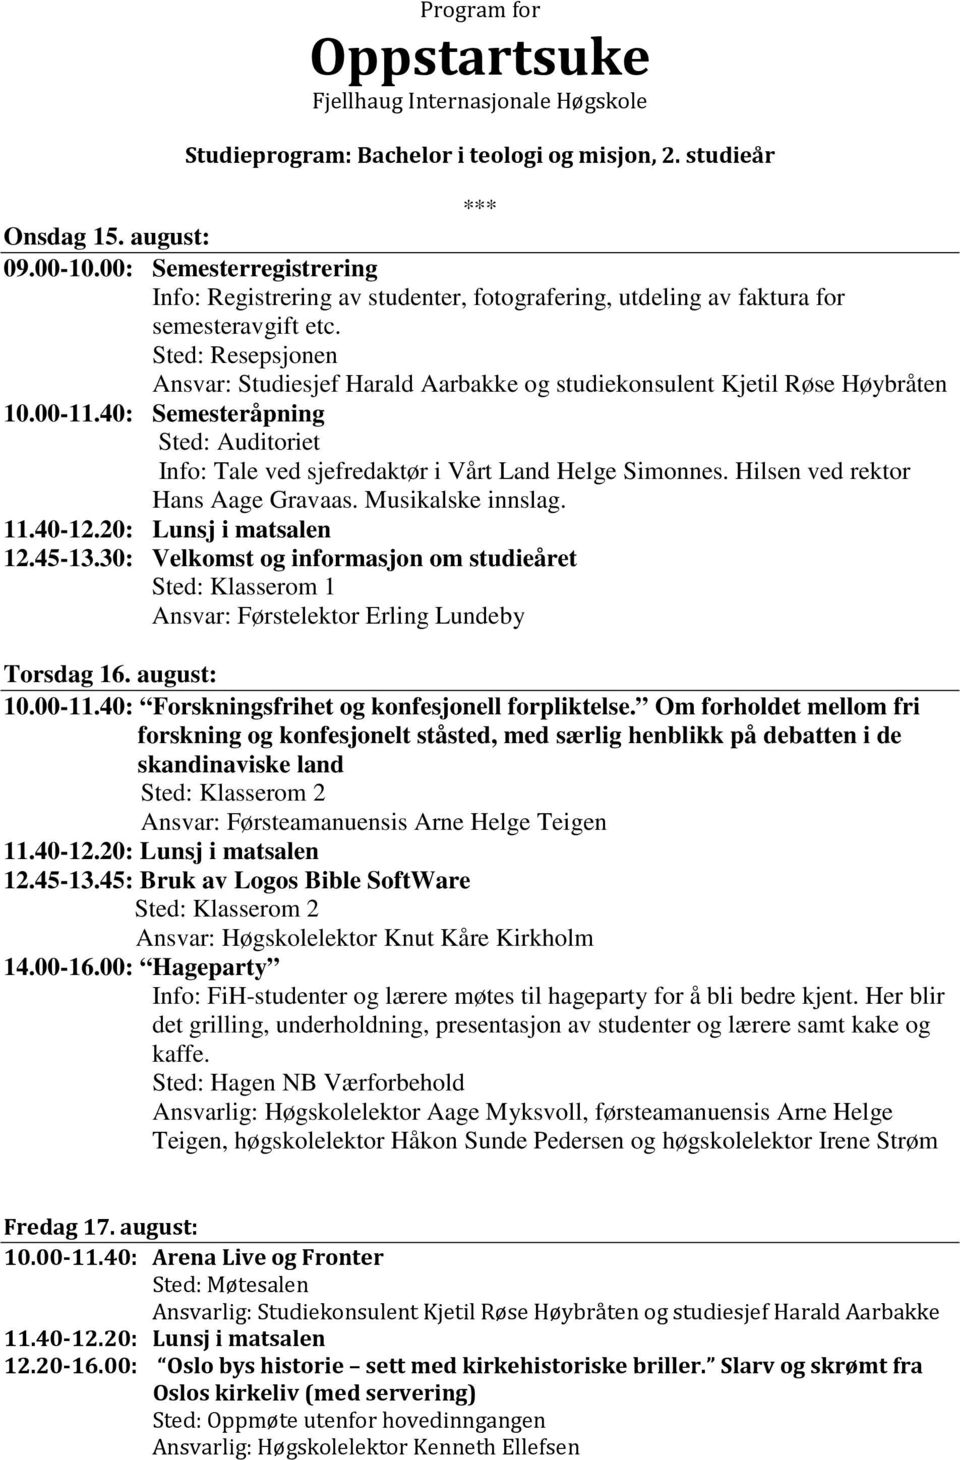 45: Bruk av Logos Bible SoftWare Sted: Klasserom 2 Ansvar: Høgskolelektor Knut Kåre Kirkholm Fredag 17. august: 10.00-11.